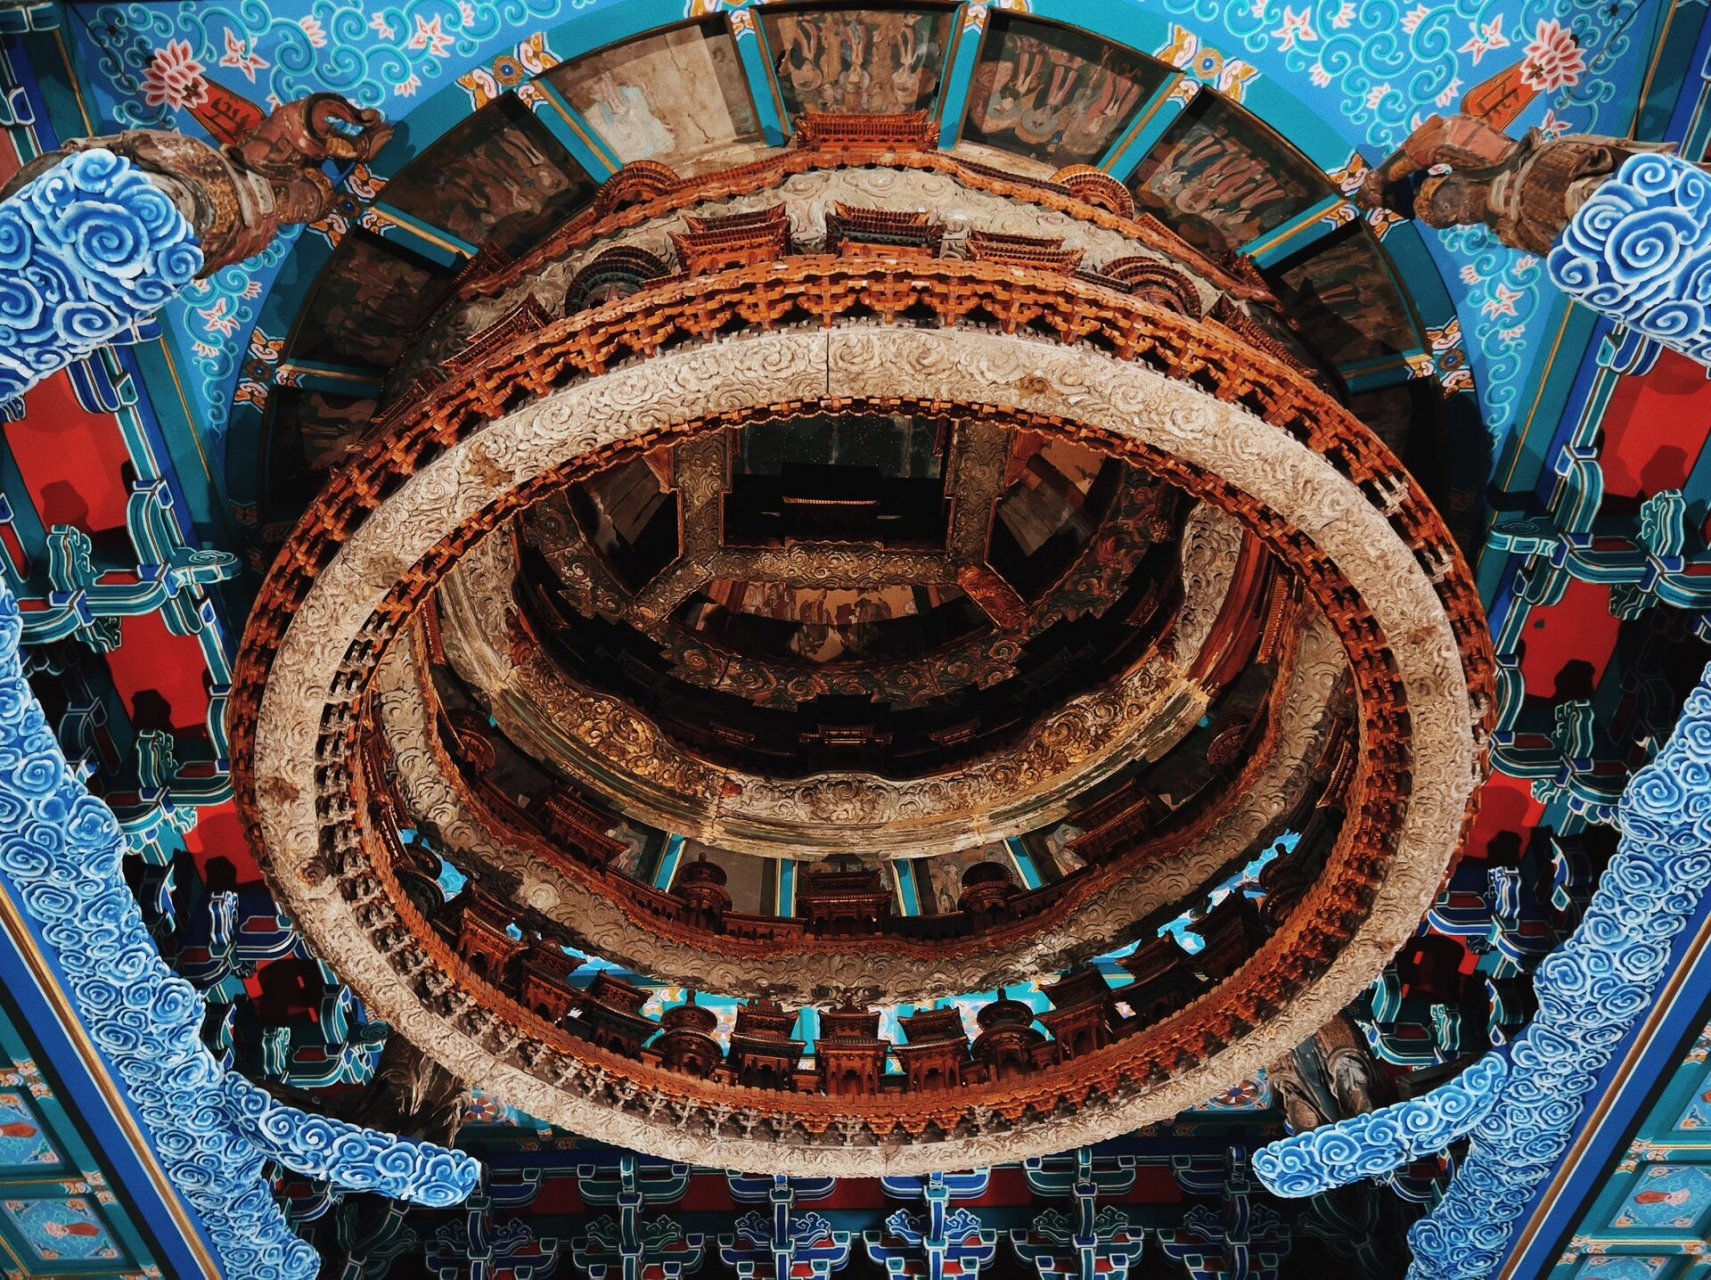 北京先农坛中国古代建筑博物馆隆福寺藻井 隆福寺藻井是国家一级文物